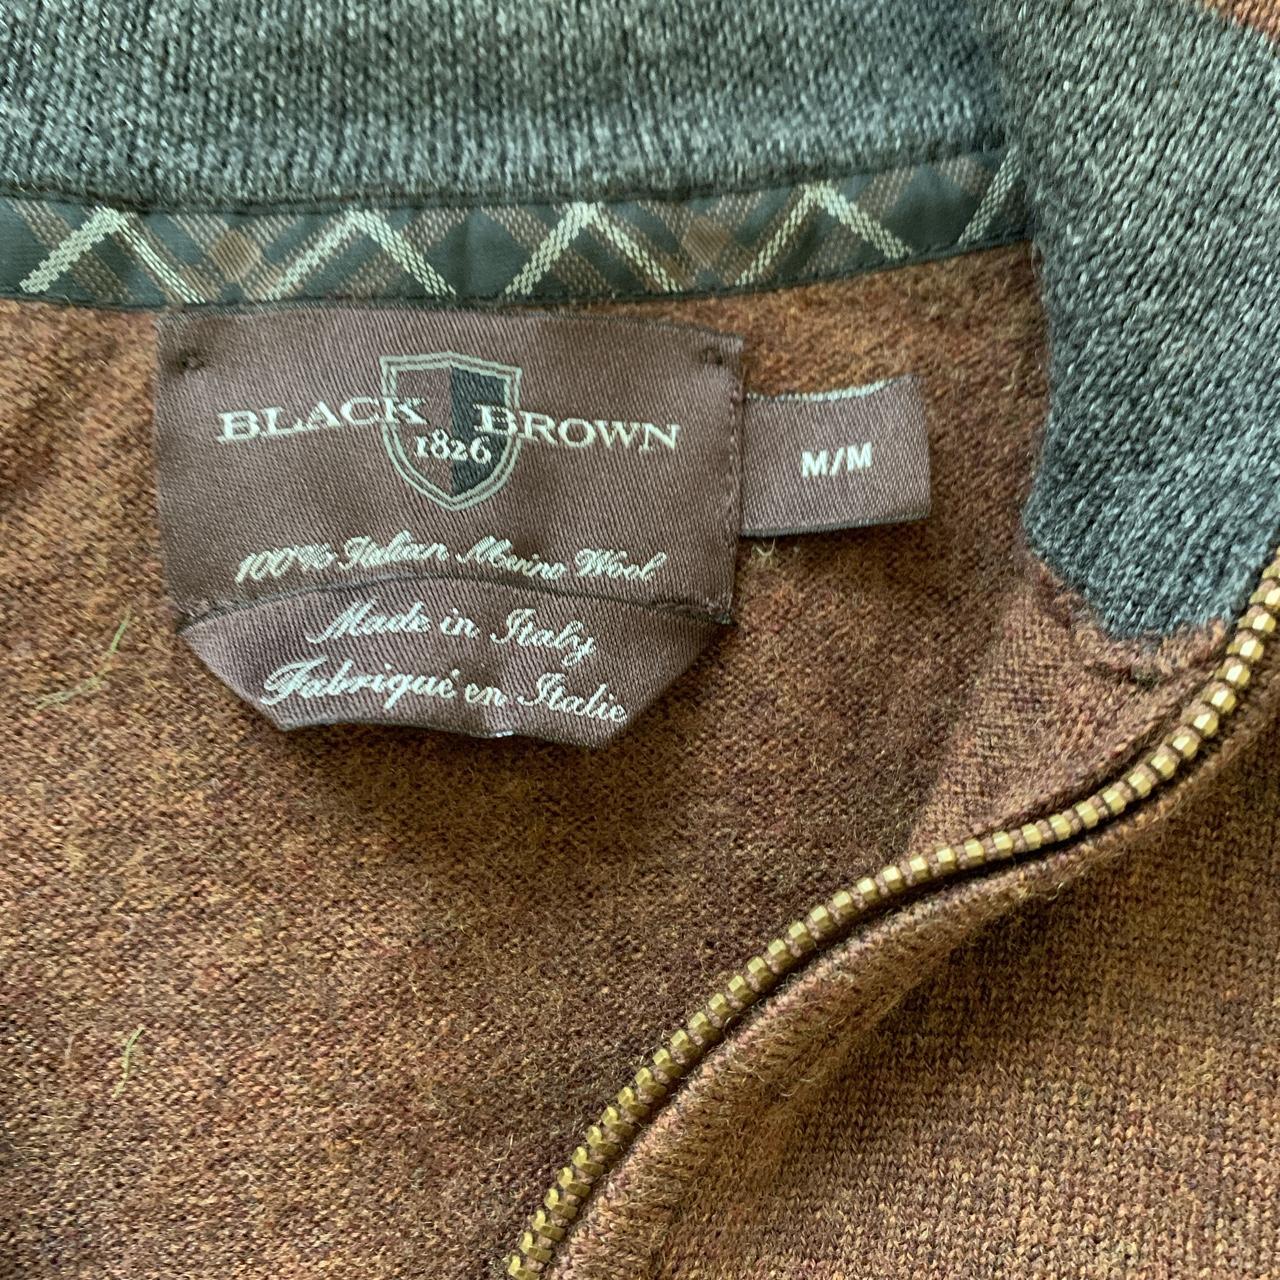 Black Brown 1826, Jeans, Mens Black Brown Jean